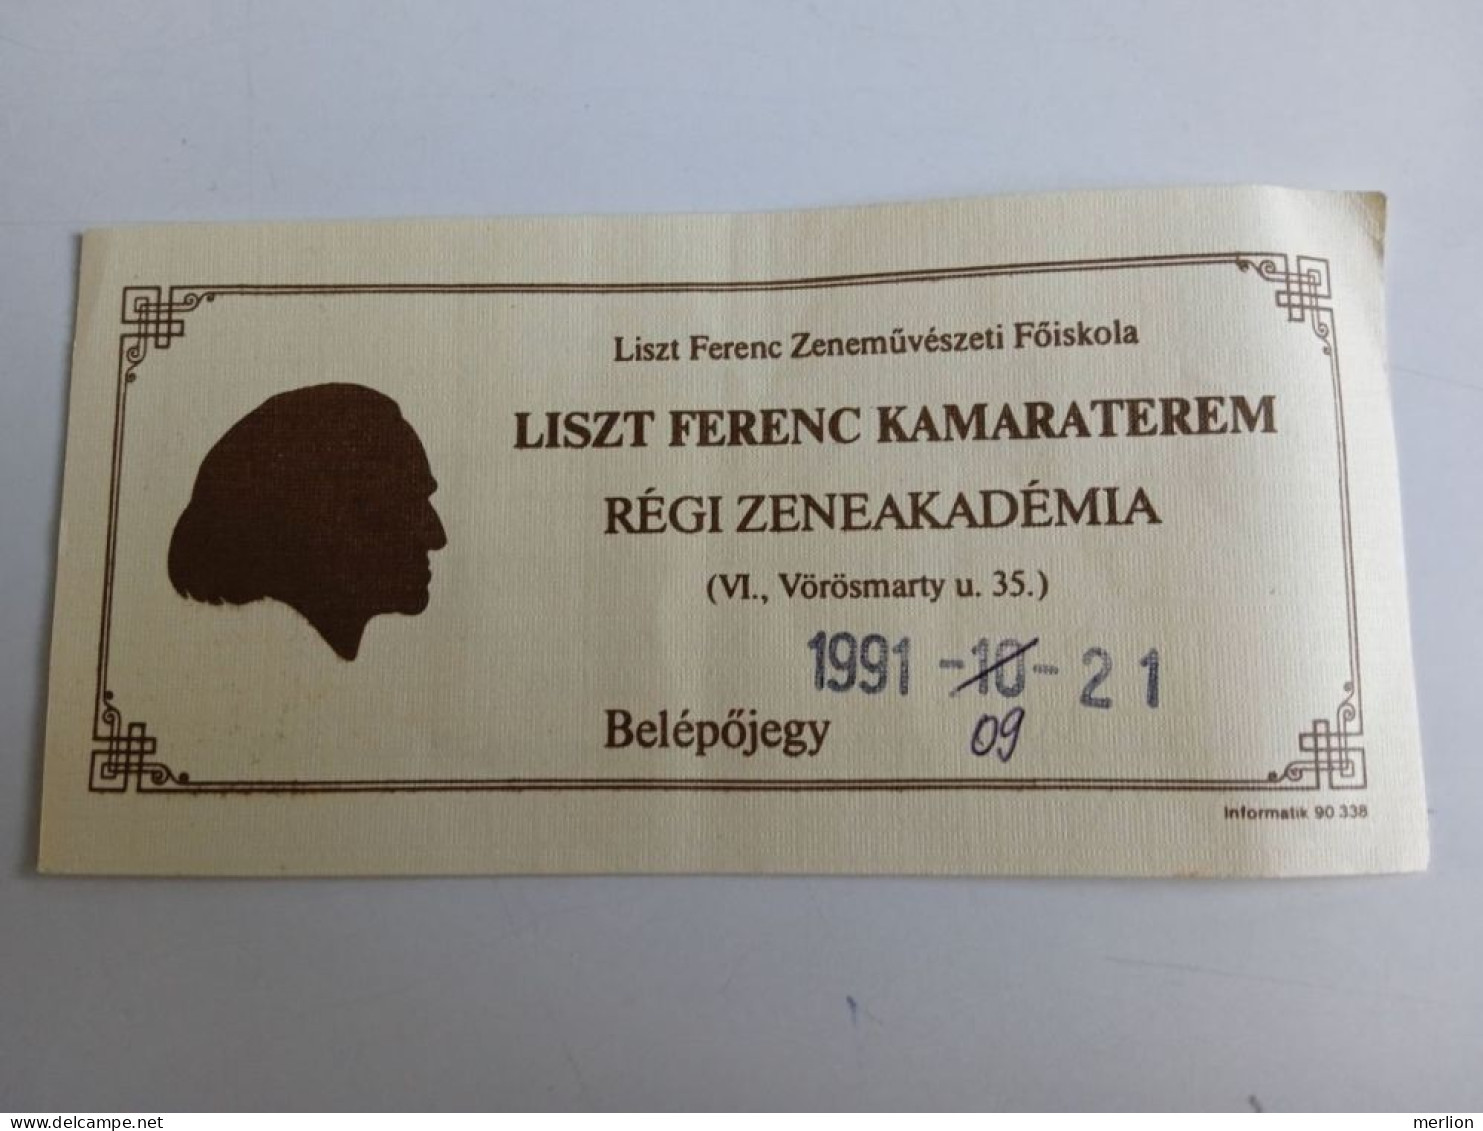 D203047  Ticket -Liszt Ferenc Kamaraterem - Liszt Ferenc Zeneművészeti Akadémia Belépőjegy -Entry Ticket 1991 - Tickets - Vouchers